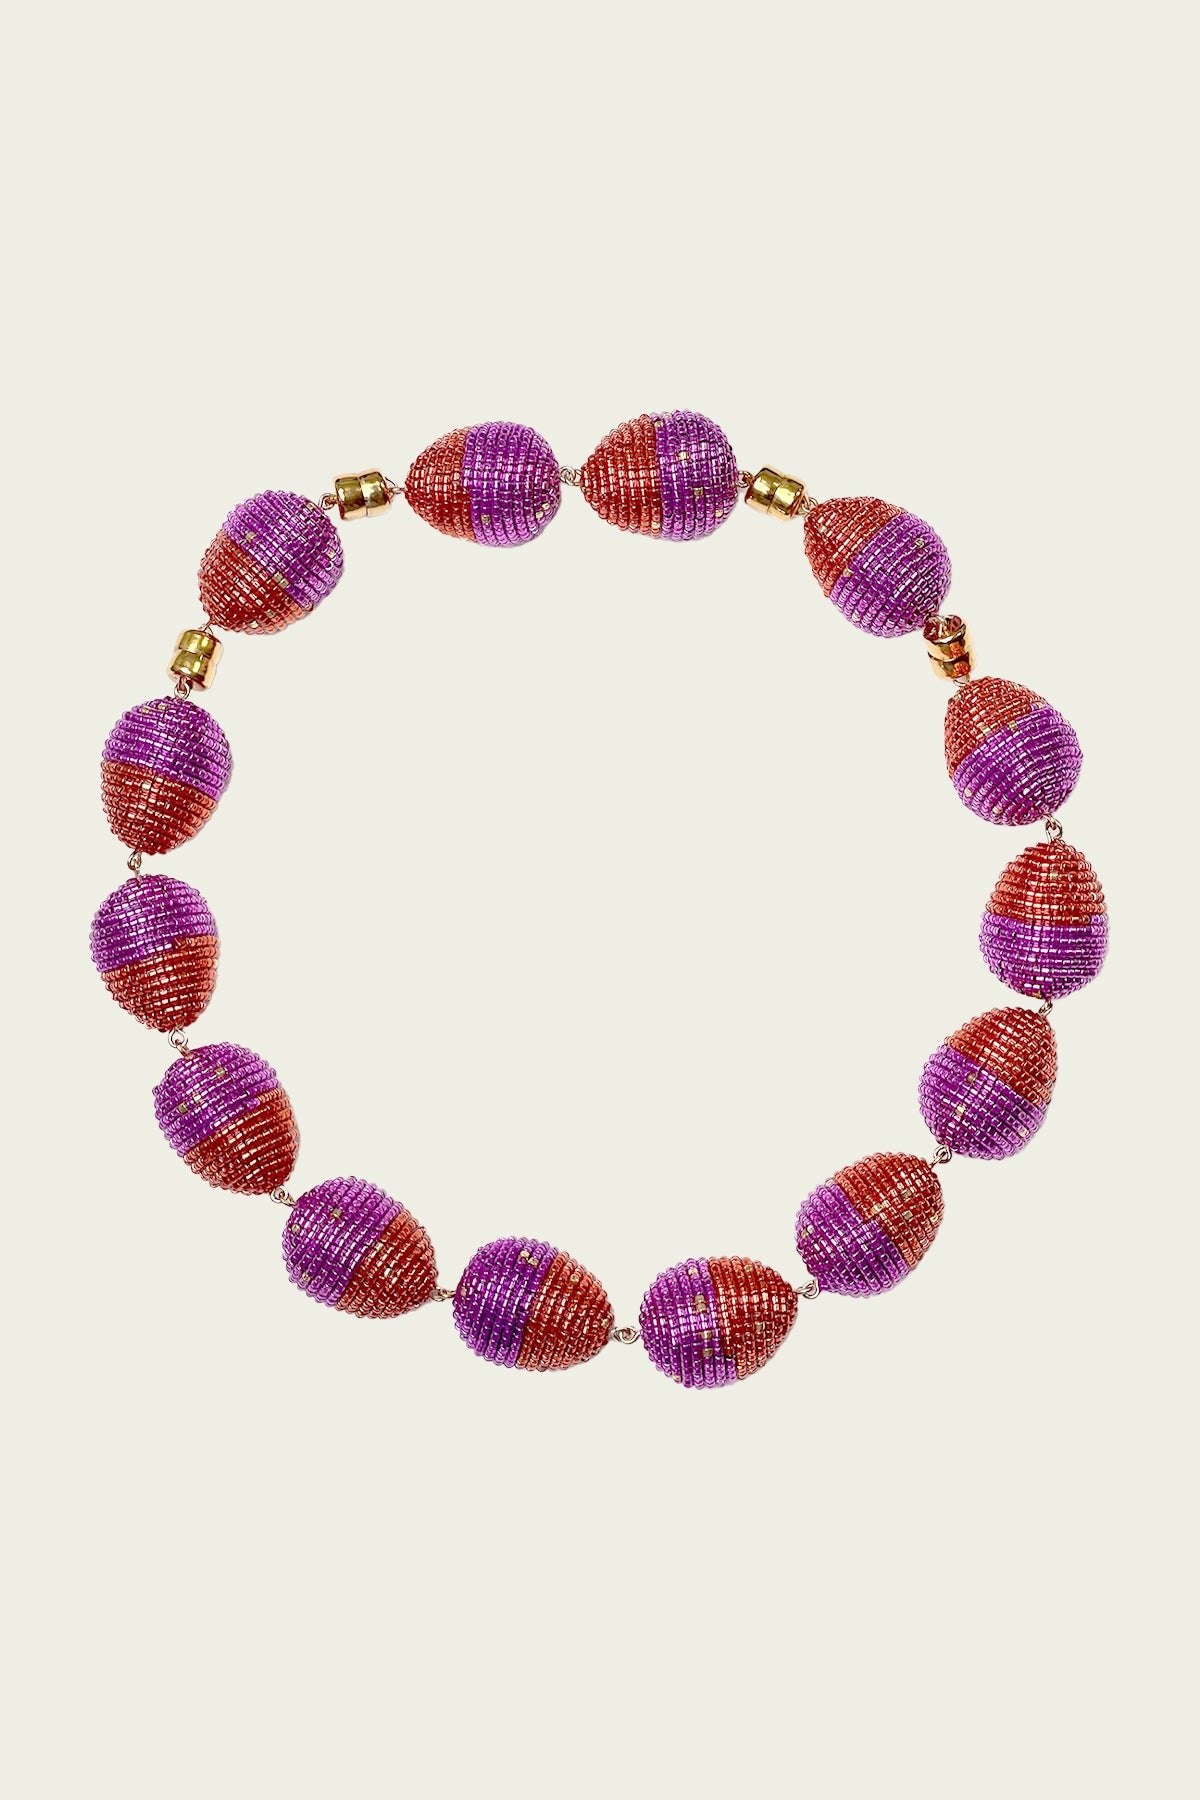 Roco Necklace in Red Violet - shop-olivia.com